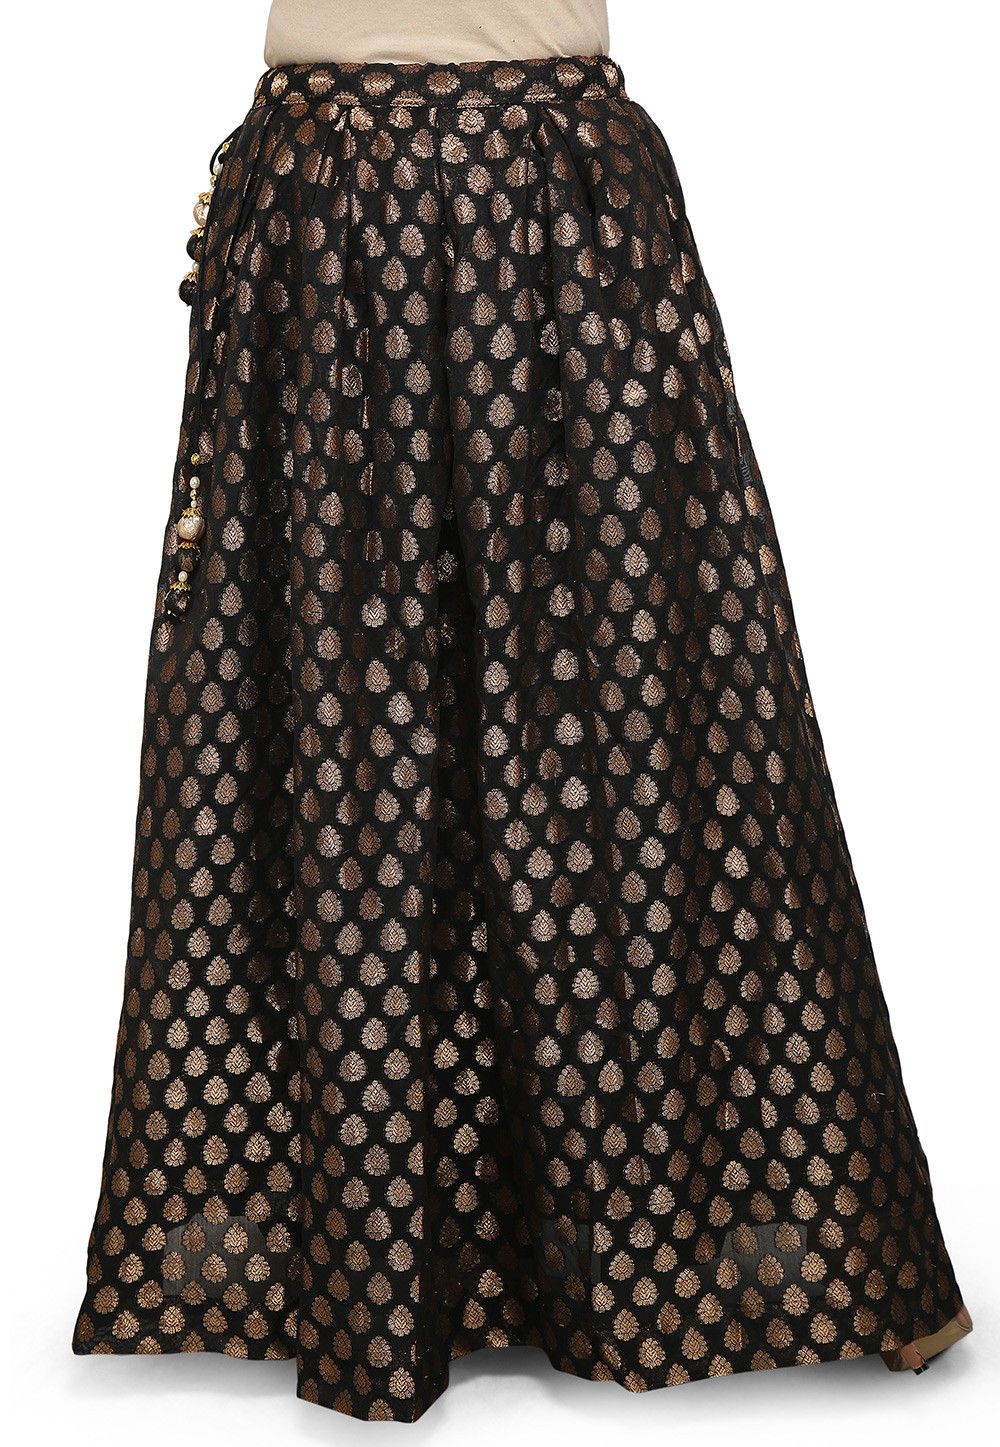 Woven Chanderi Silk Skirt in Black : BNJ304